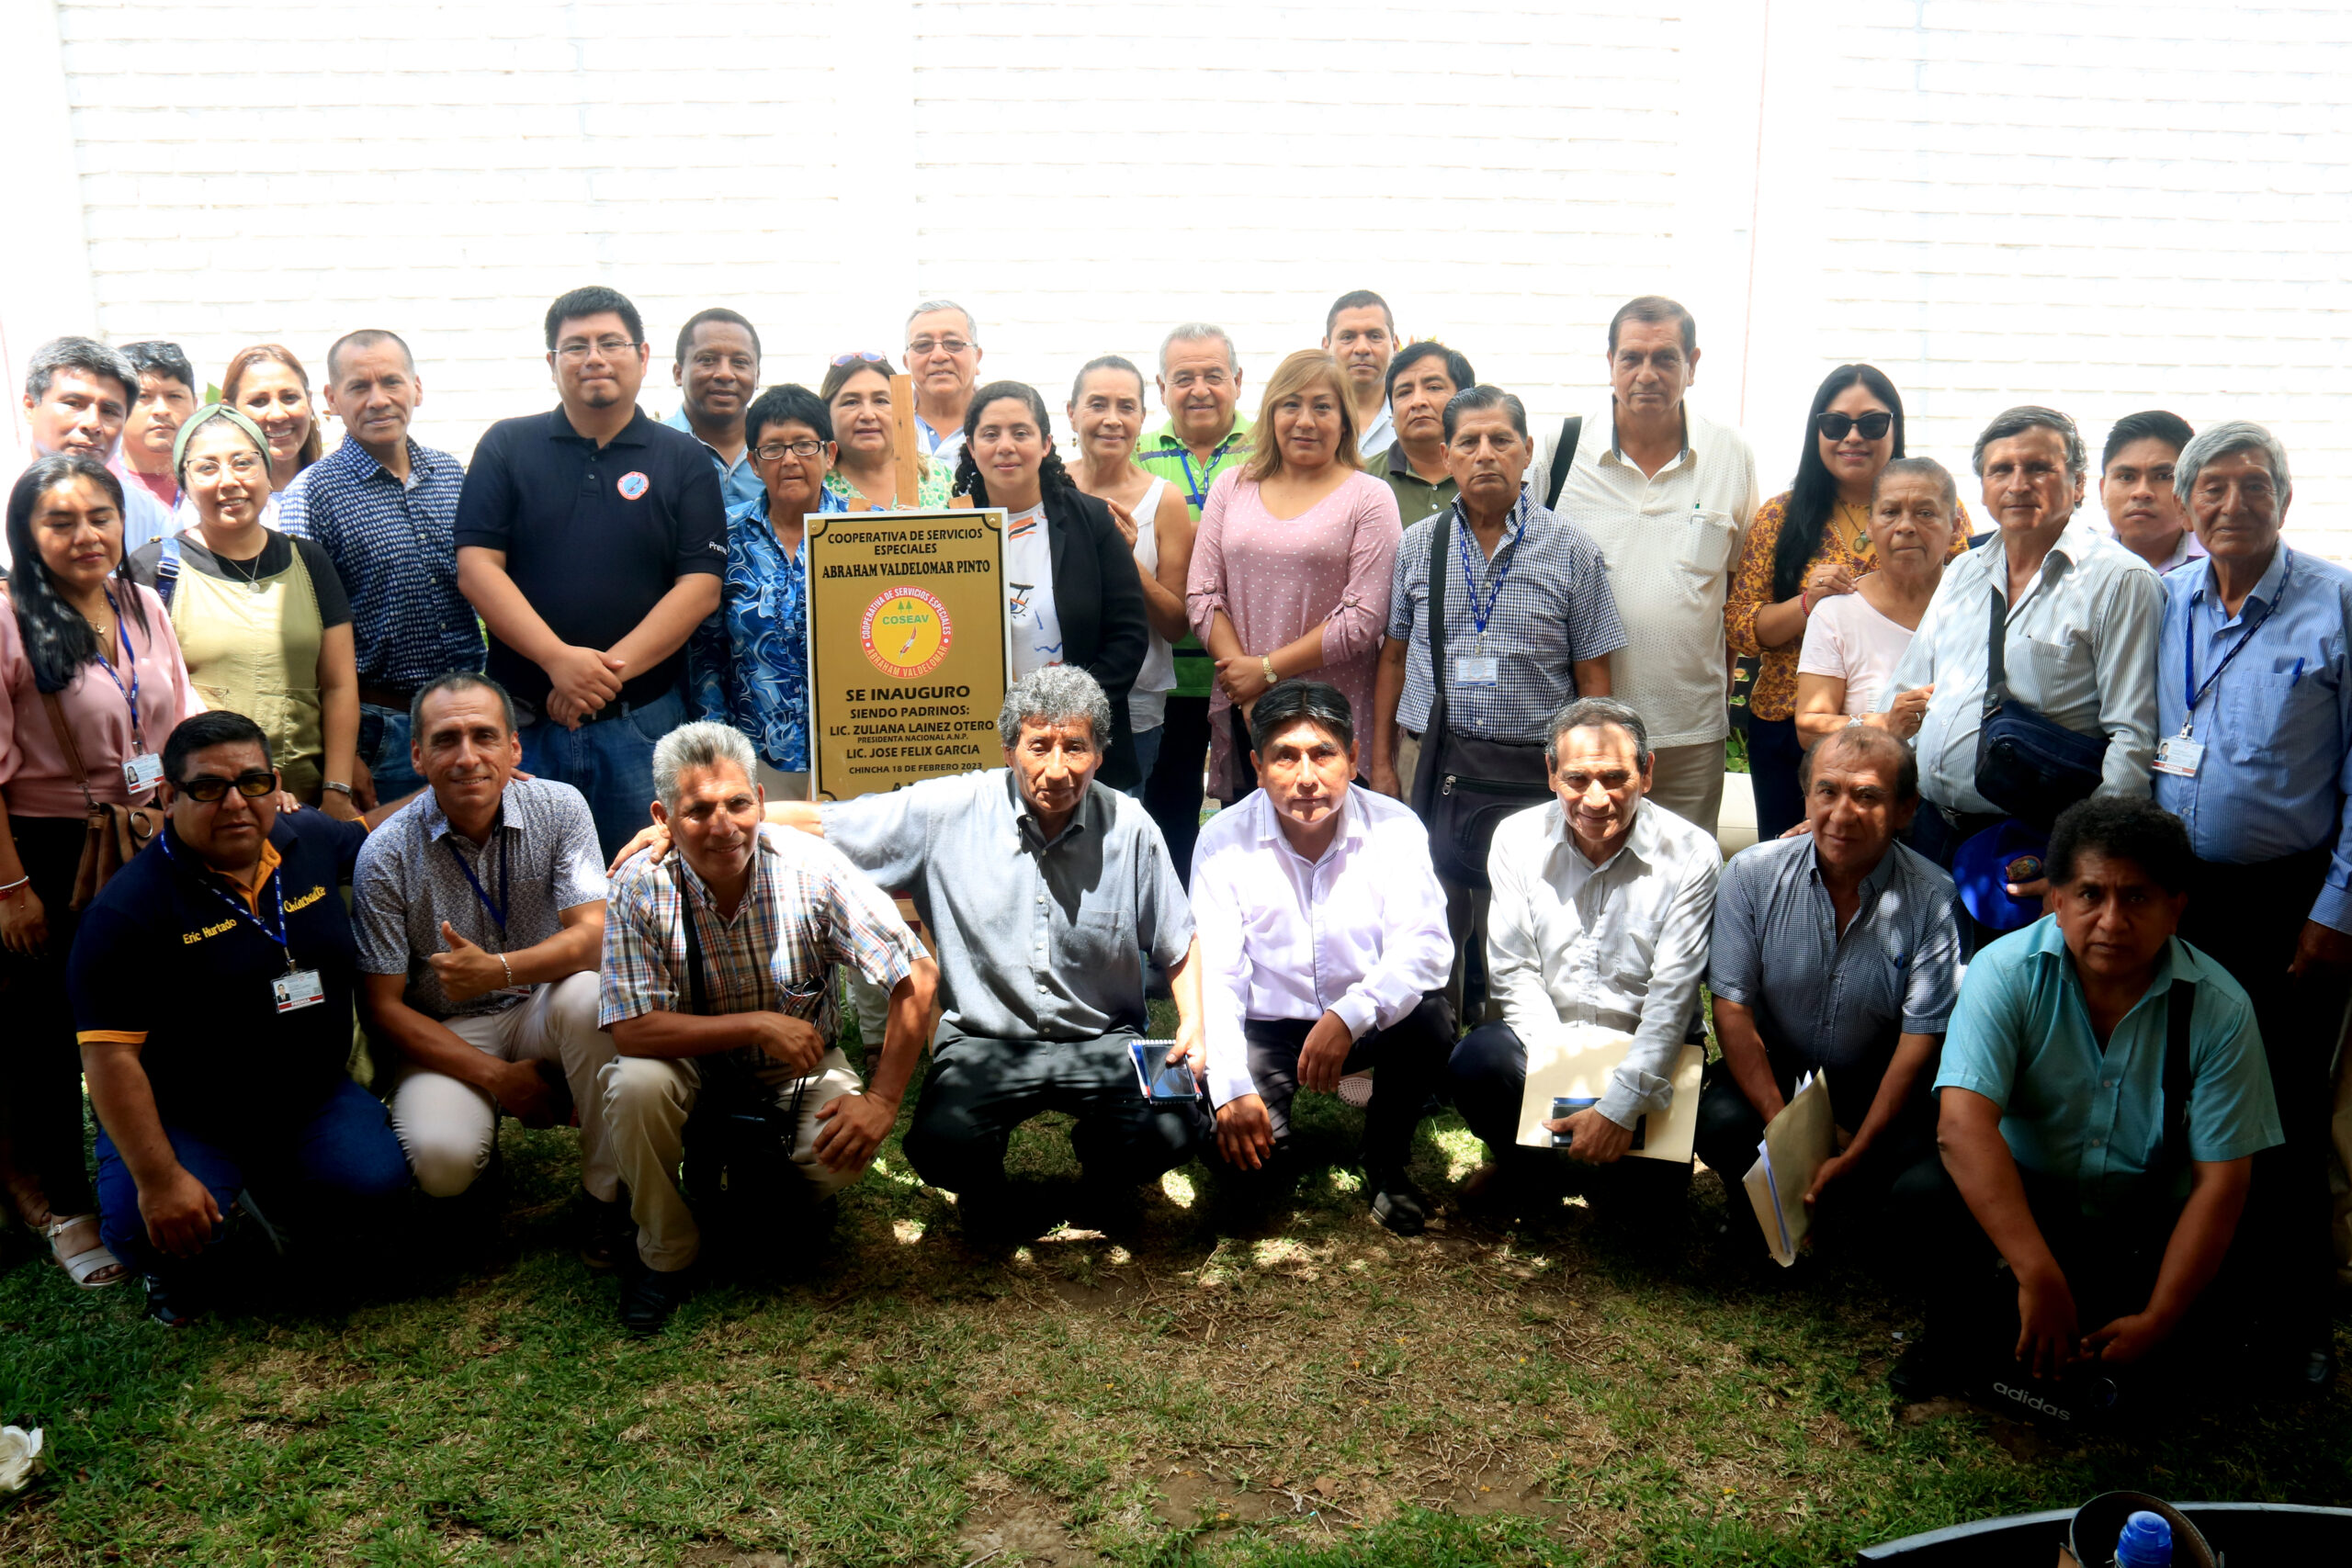 Cooperativa de prensa Abraham Valdelomar es presentada formalmente en región Ica